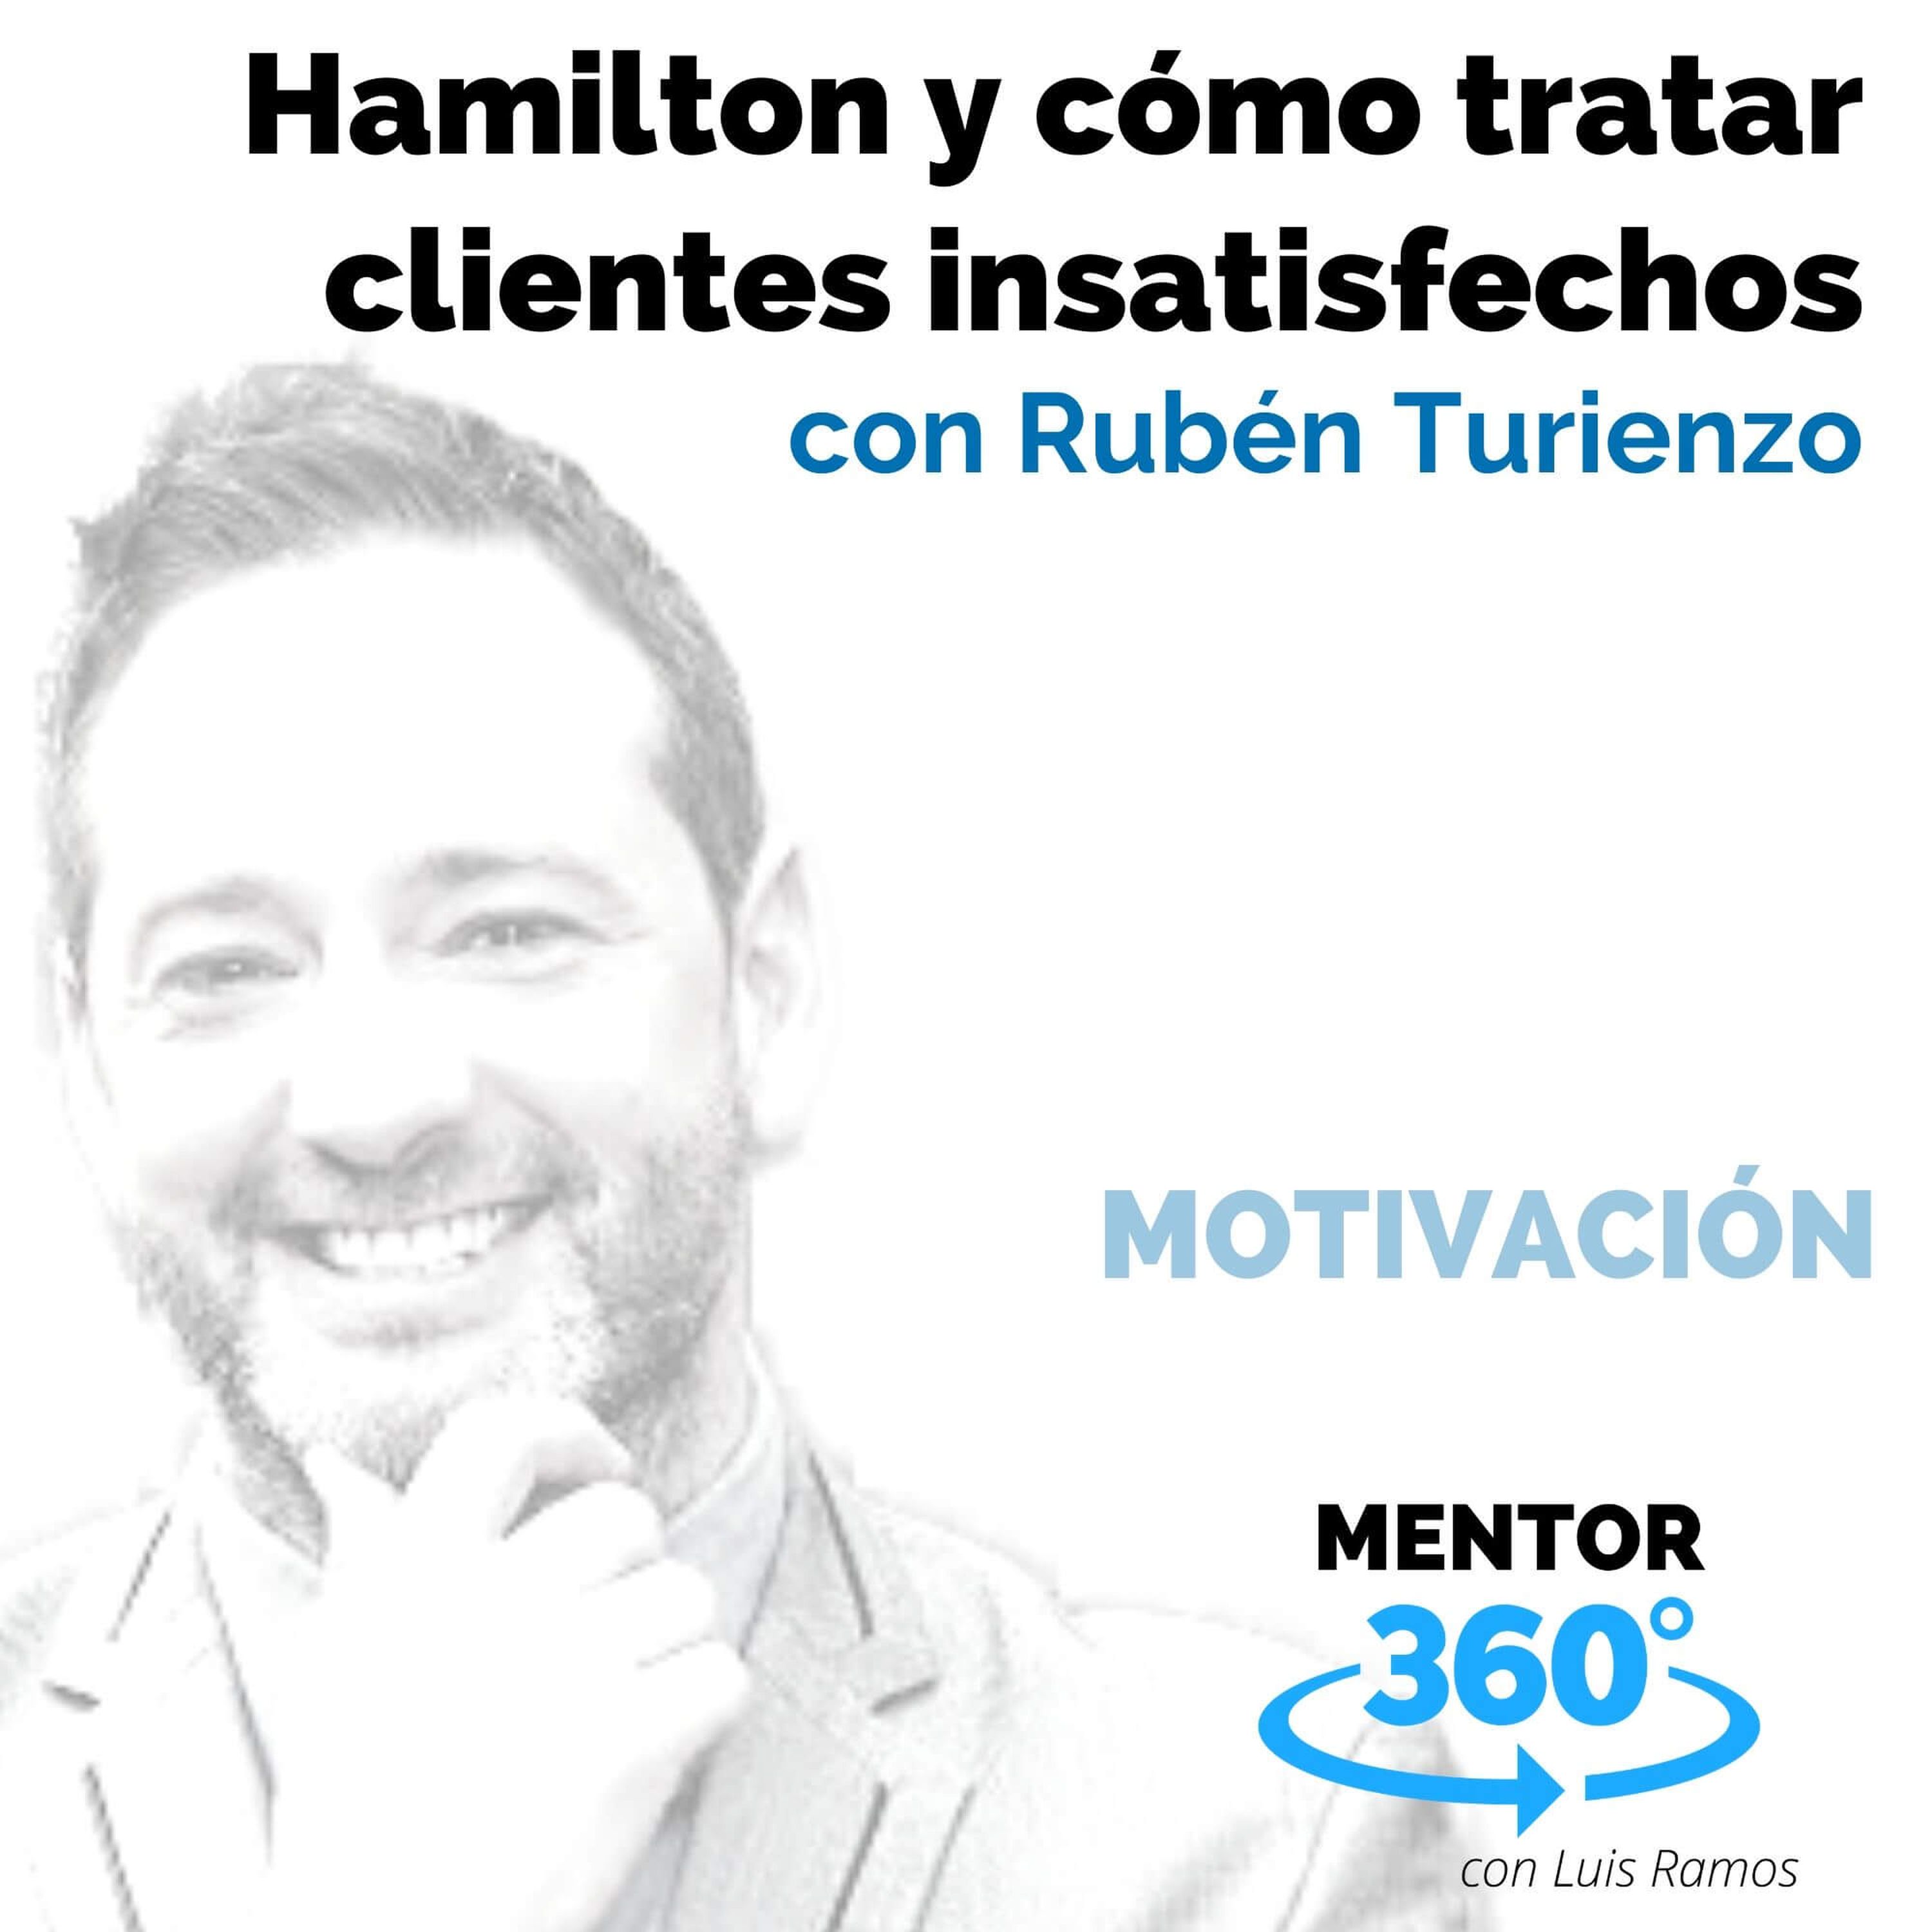 Hamilton y cómo tratar clientes insatisfechos, con Rubén Turienzo - MOTIVACIÓN